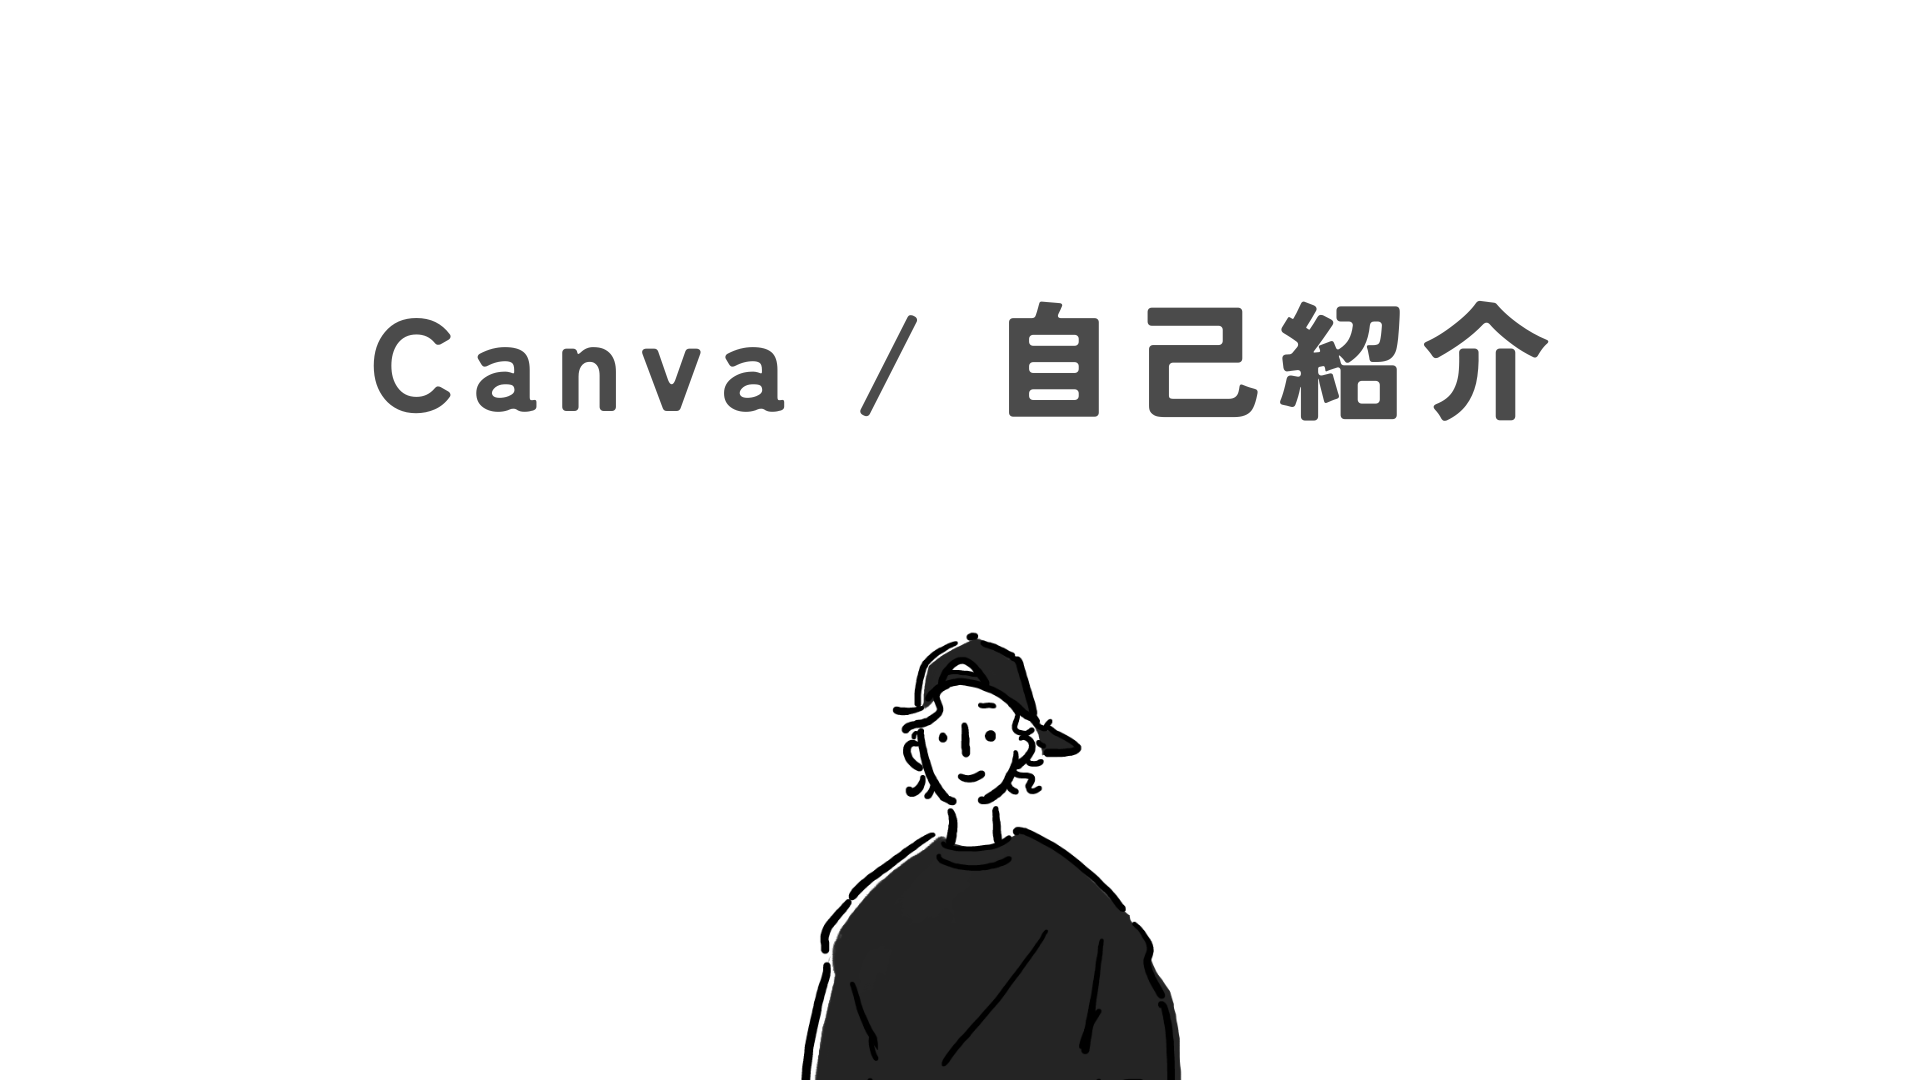 Canva / 自己紹介